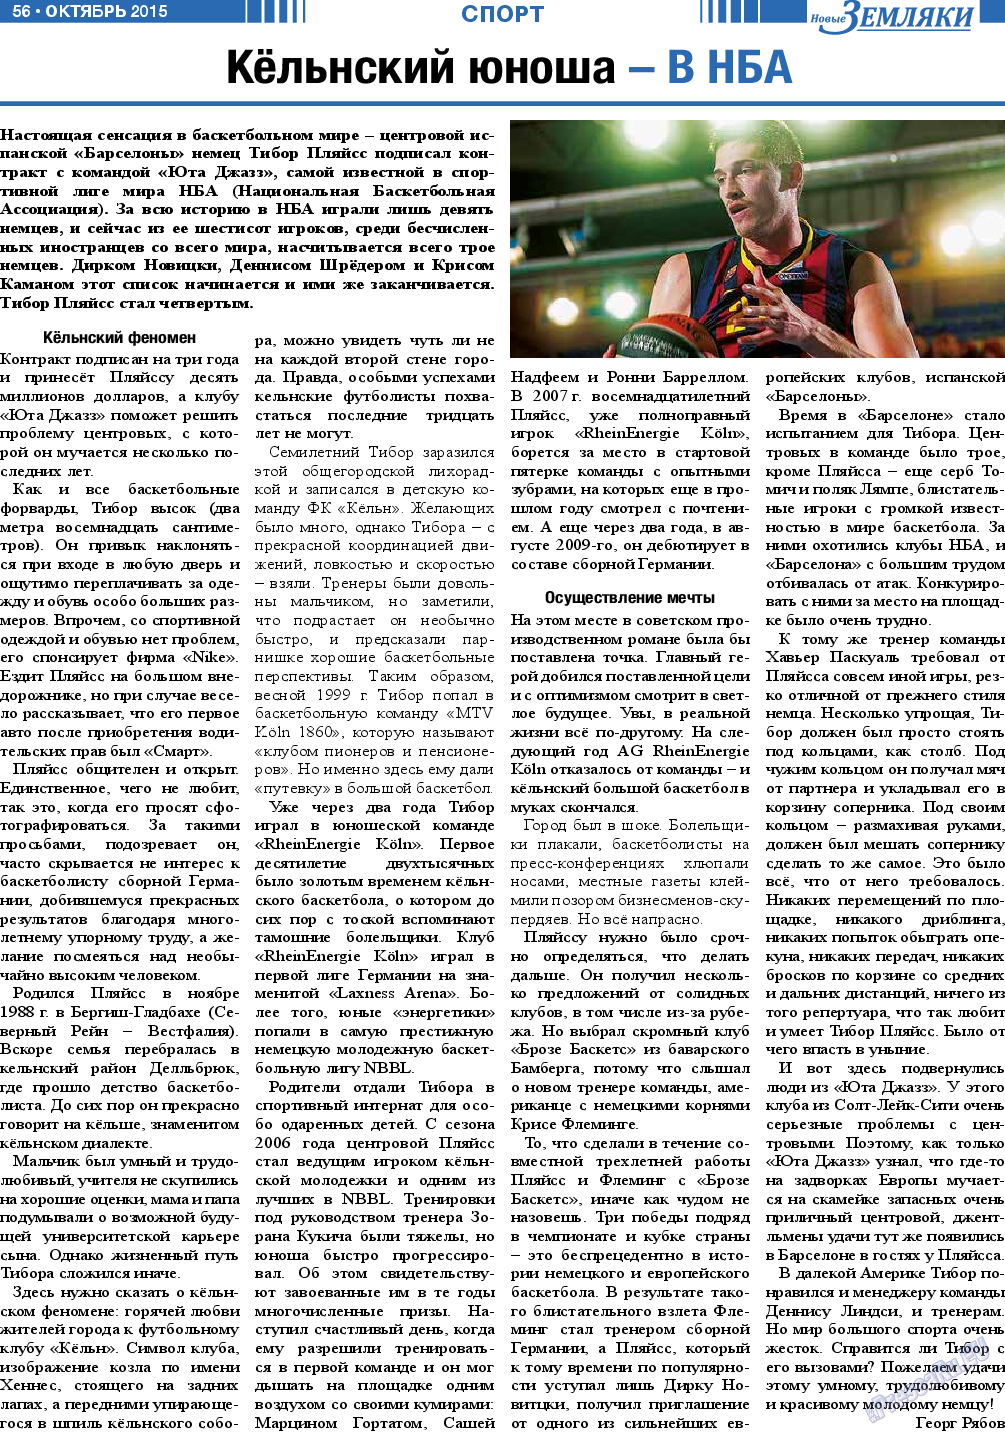 Новые Земляки, газета. 2015 №10 стр.56